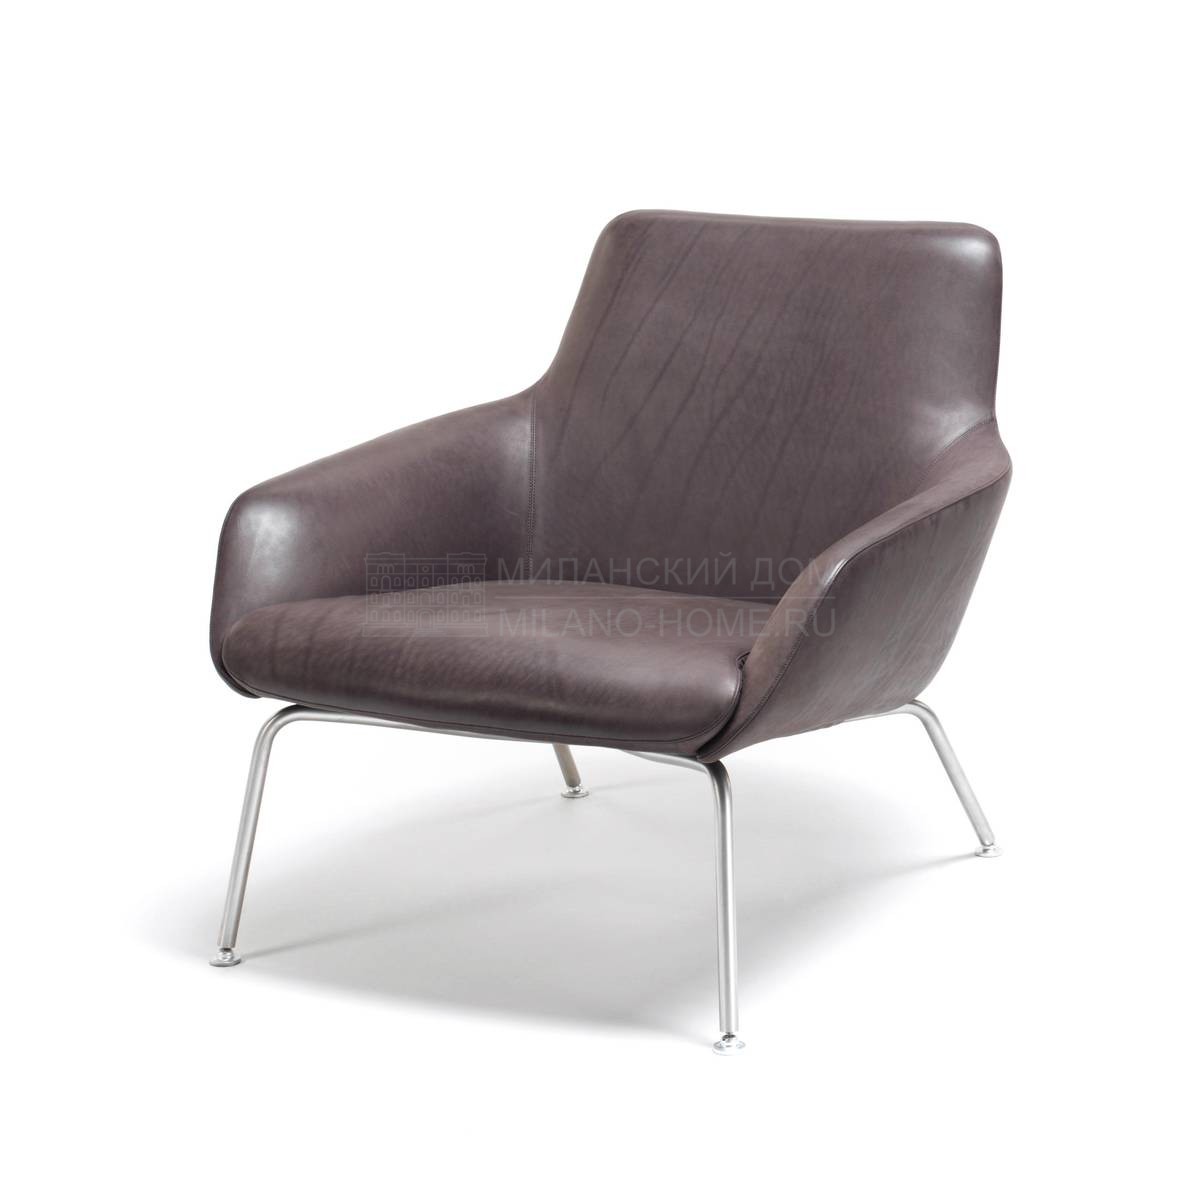 Кожаное кресло Reader sedia leather из Италии фабрики LIVING DIVANI